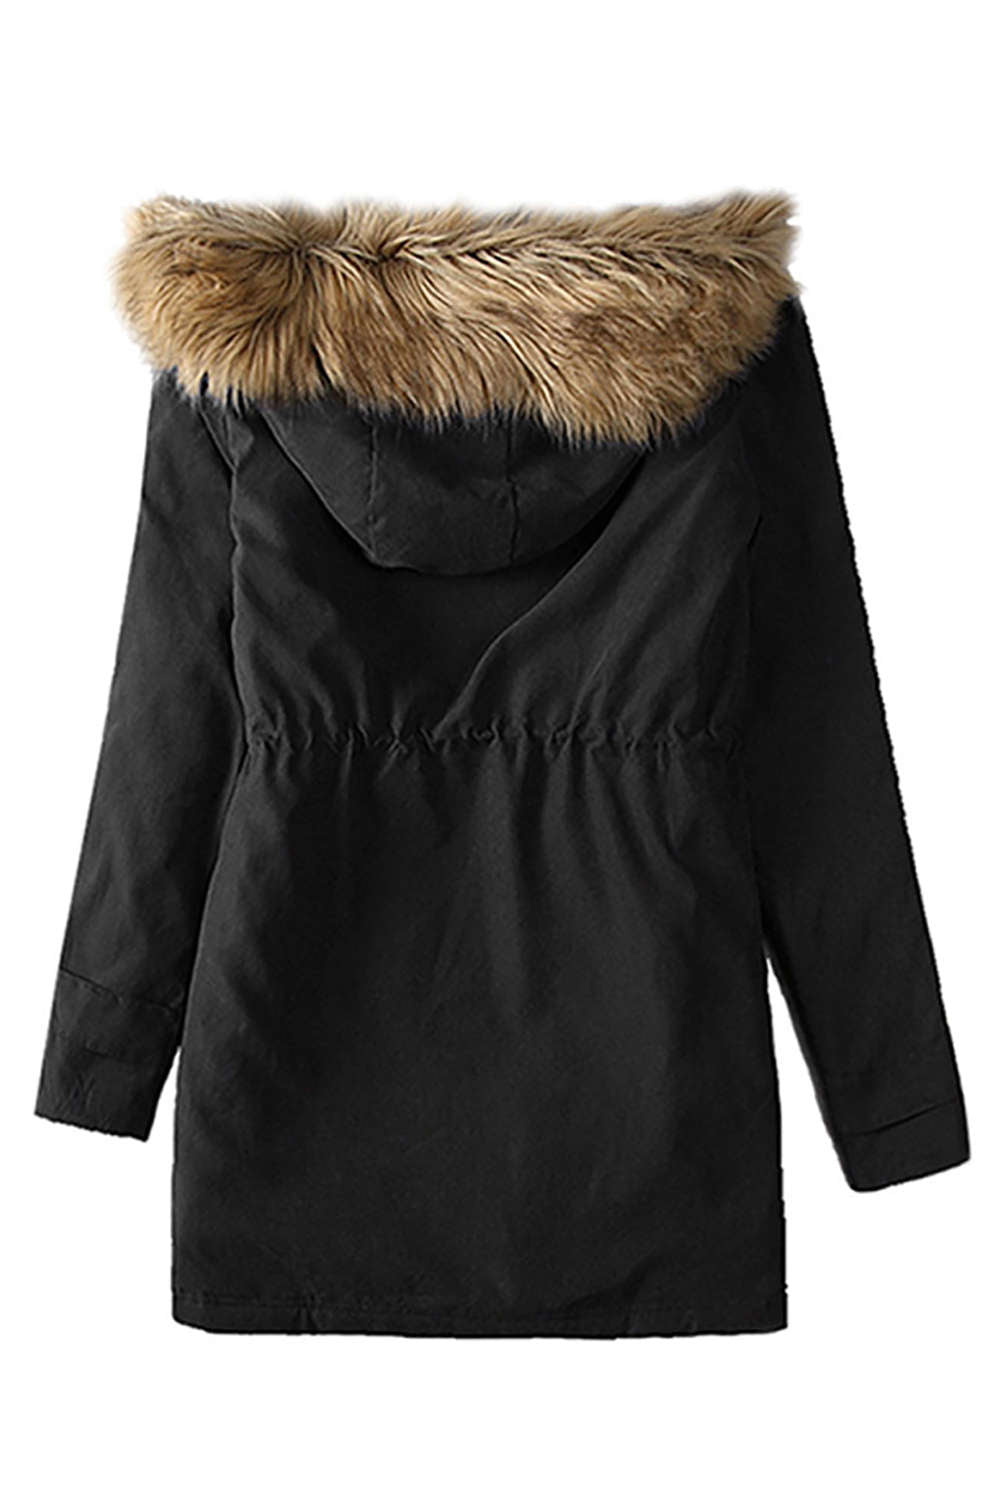 Iyasson Thicken Warm Winter Fleece Jacket